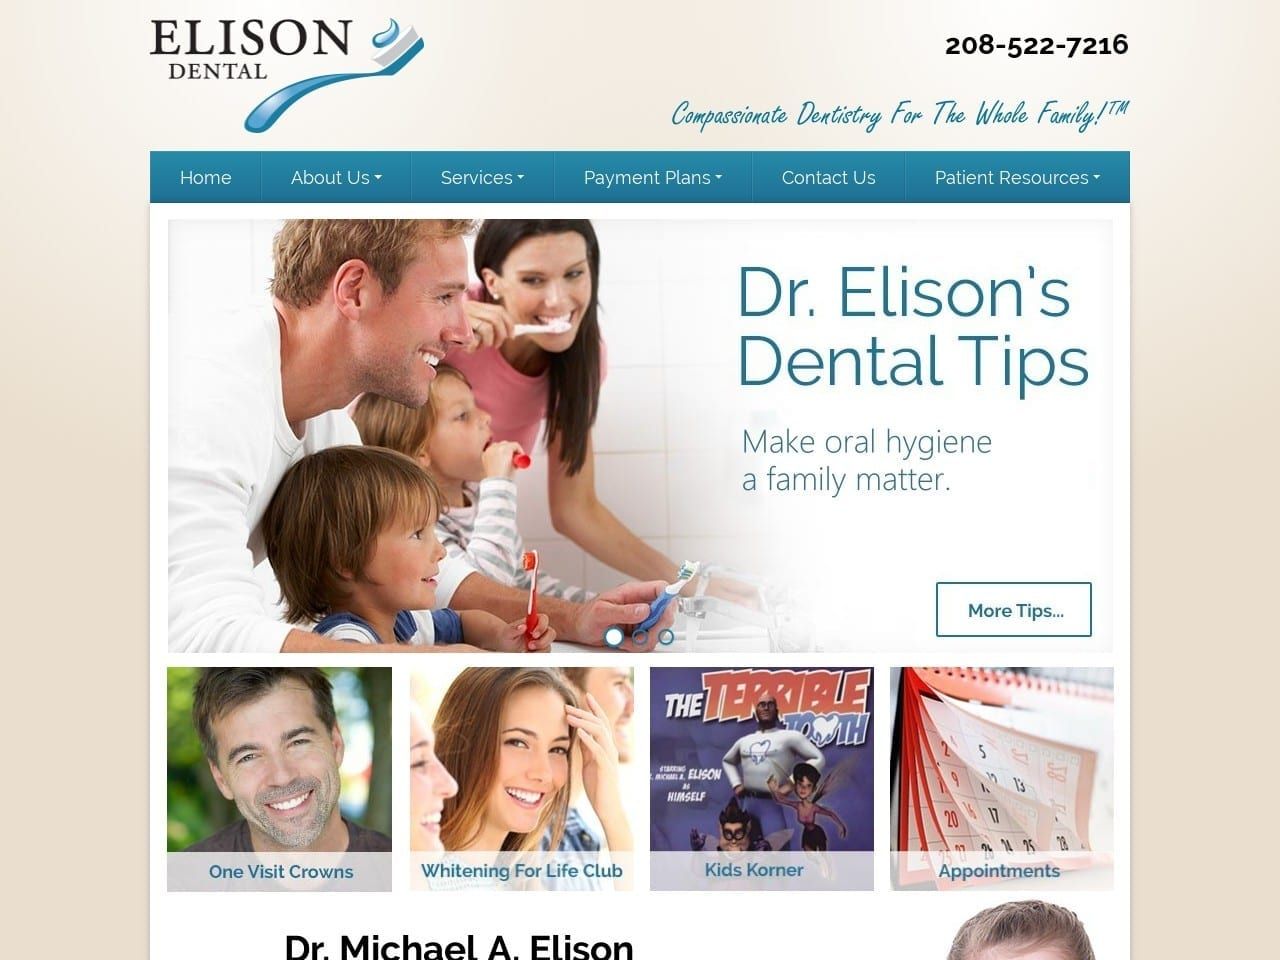 Elison Dental Center Elison Michael A DDS Website Screenshot from elisondentalcenter.com